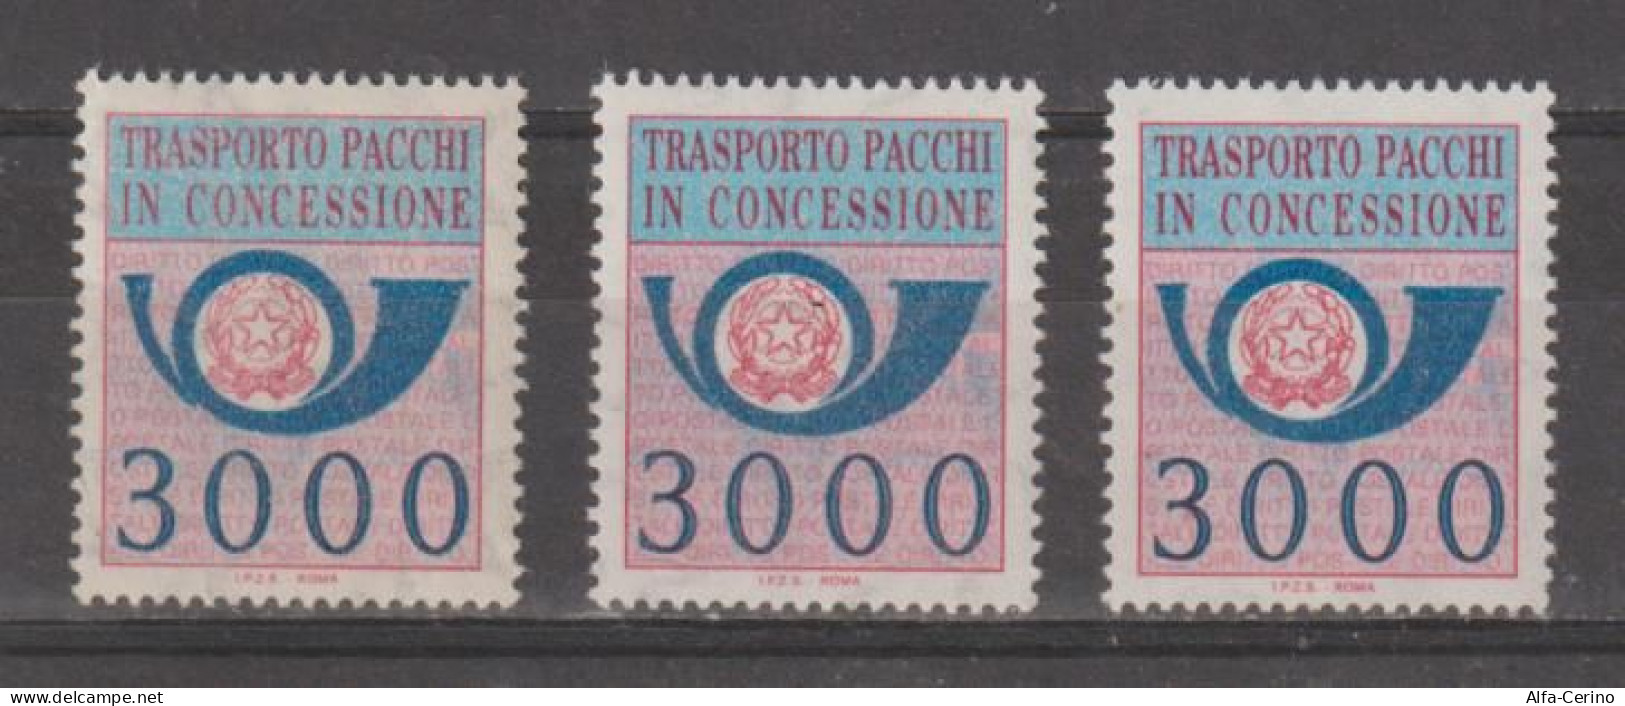 REPUBBLICA:  1984  PACCHI  IN  CONCESSIONE  -  £. 3000  AZZURRO  E  ROSA  LILLA  RIPETUTO  3  N. -  SASS. 22 - Pacchi In Concessione